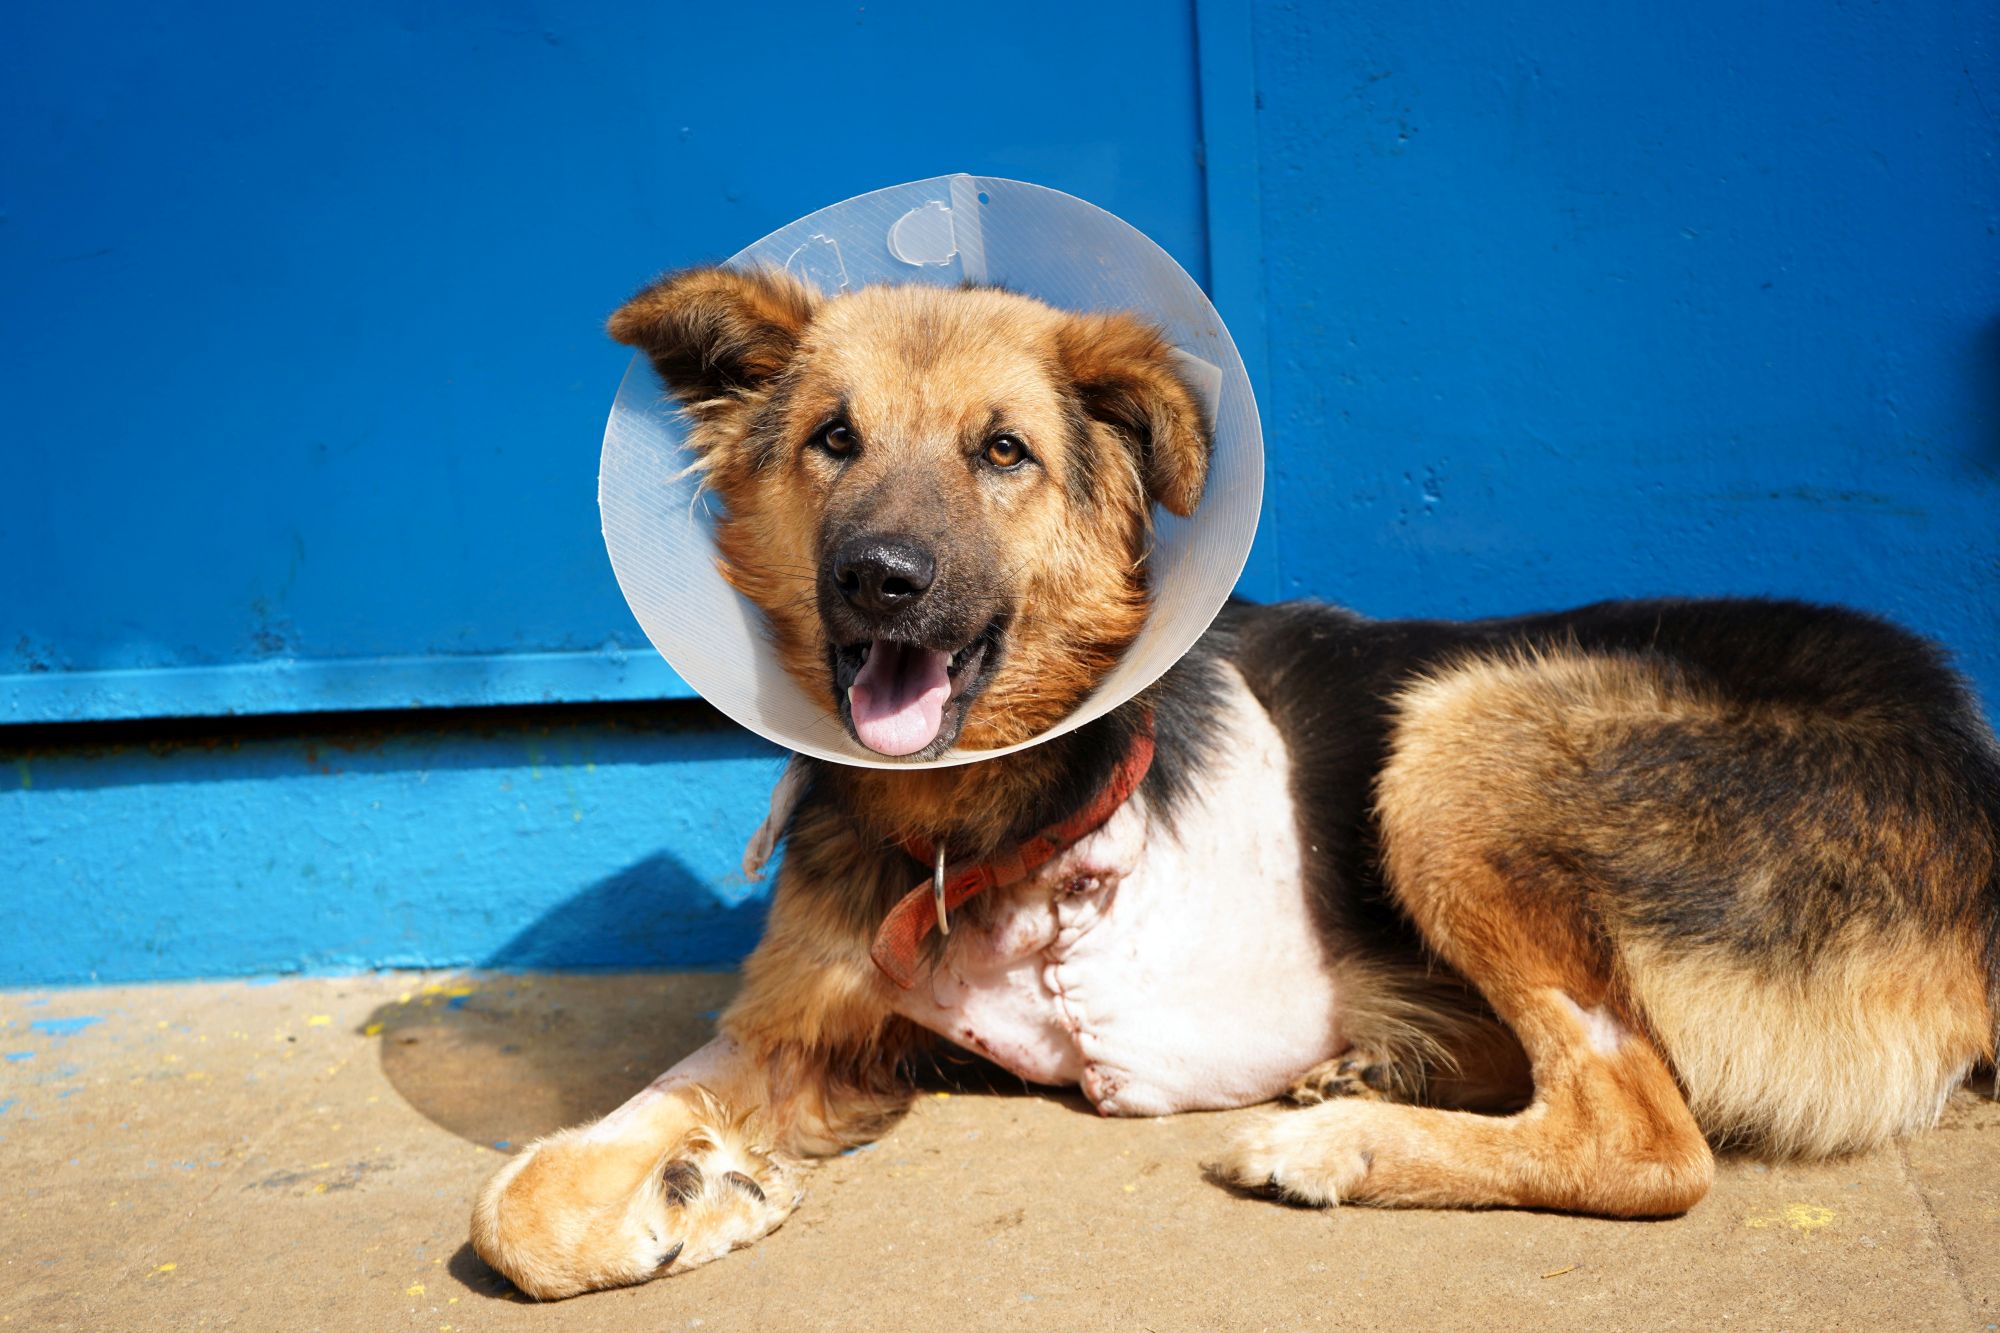 India: Upskilling vets to save dogs like Murli